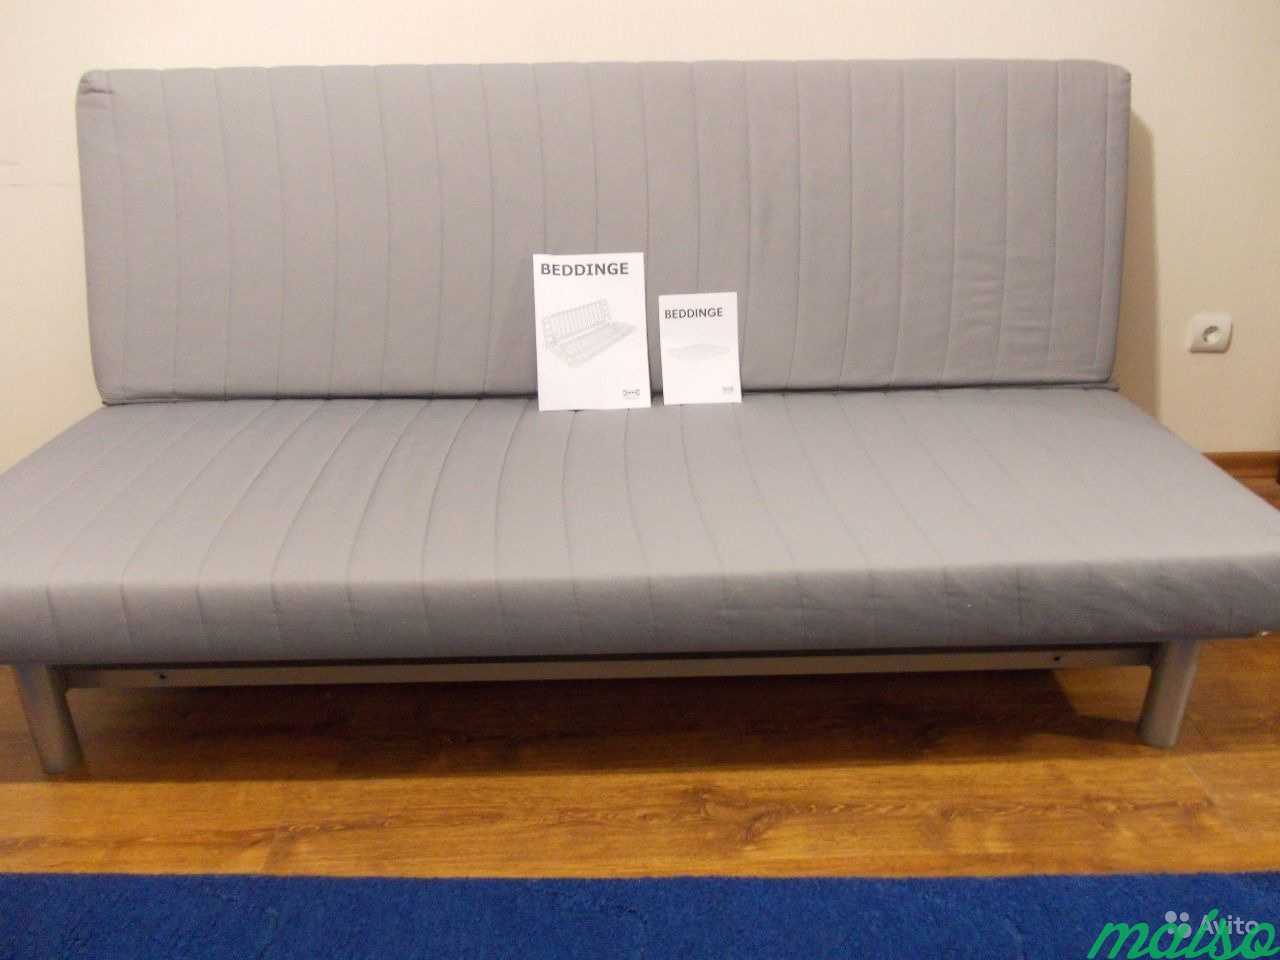 Beddinge Ikea